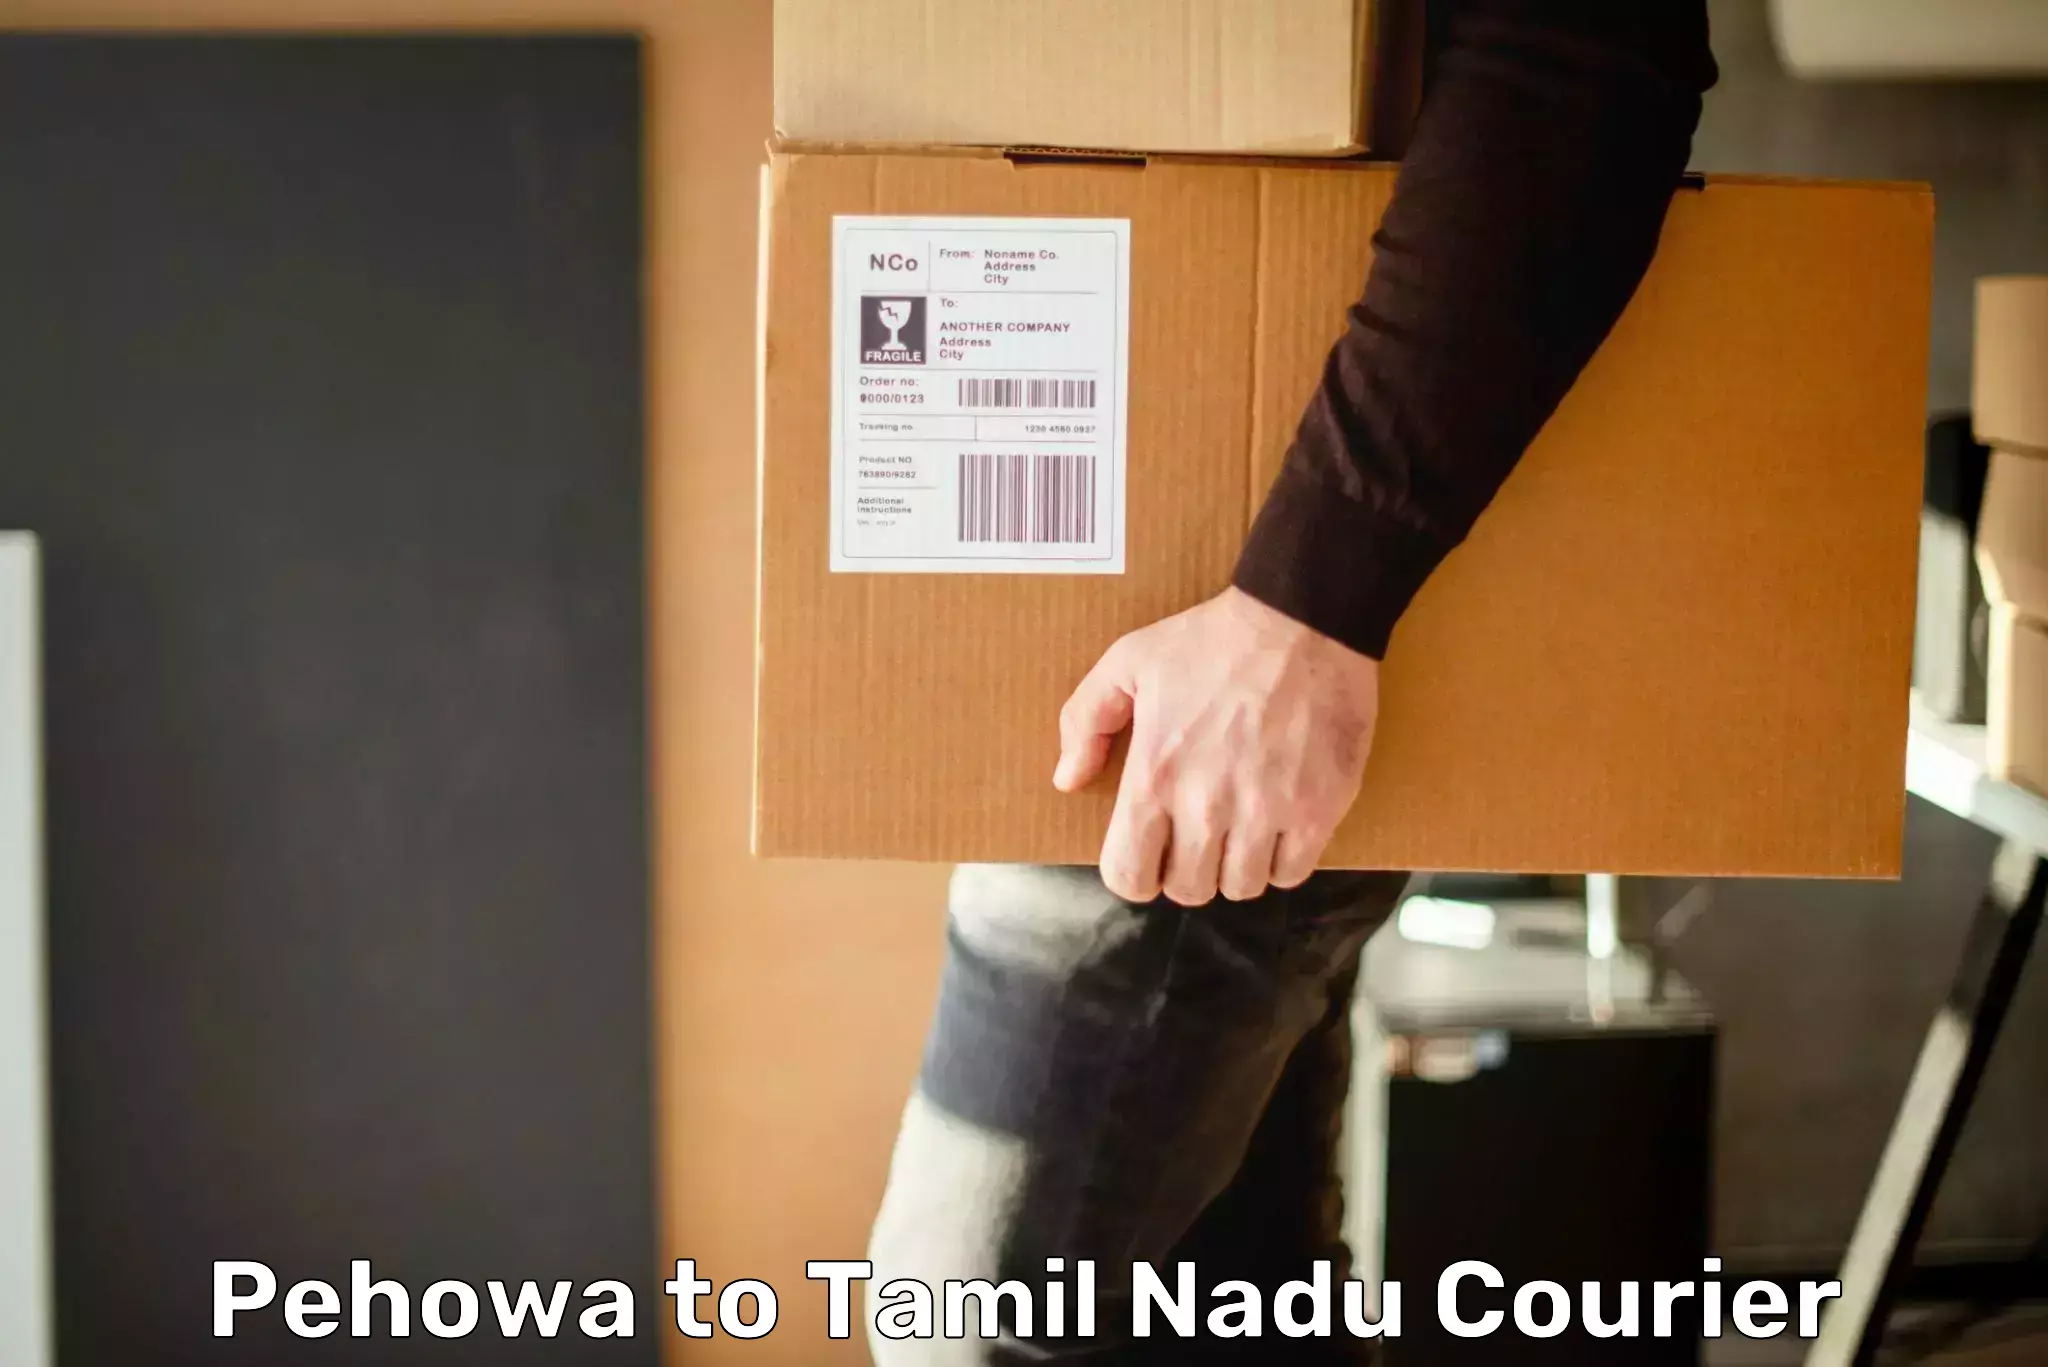 Customer-focused courier Pehowa to Amrita Vishwa Vidyapeetham Coimbatore